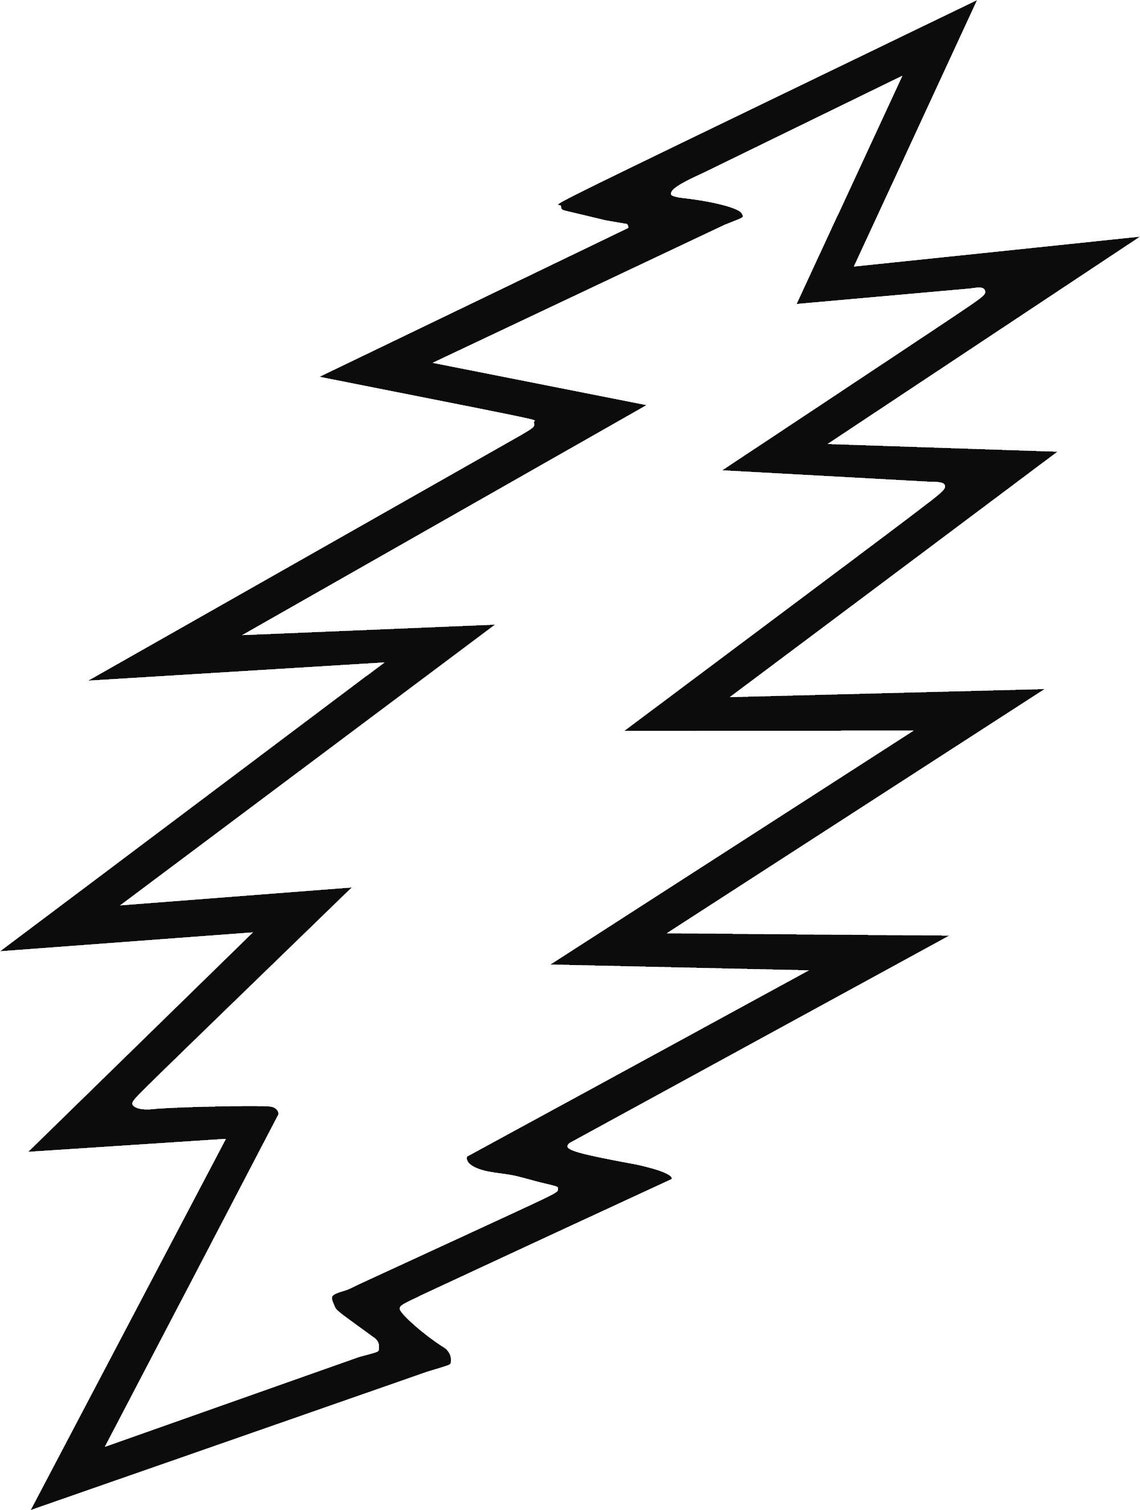 grateful-dead-lightning-bolt-decal-13-point-lightning-bolt-etsy